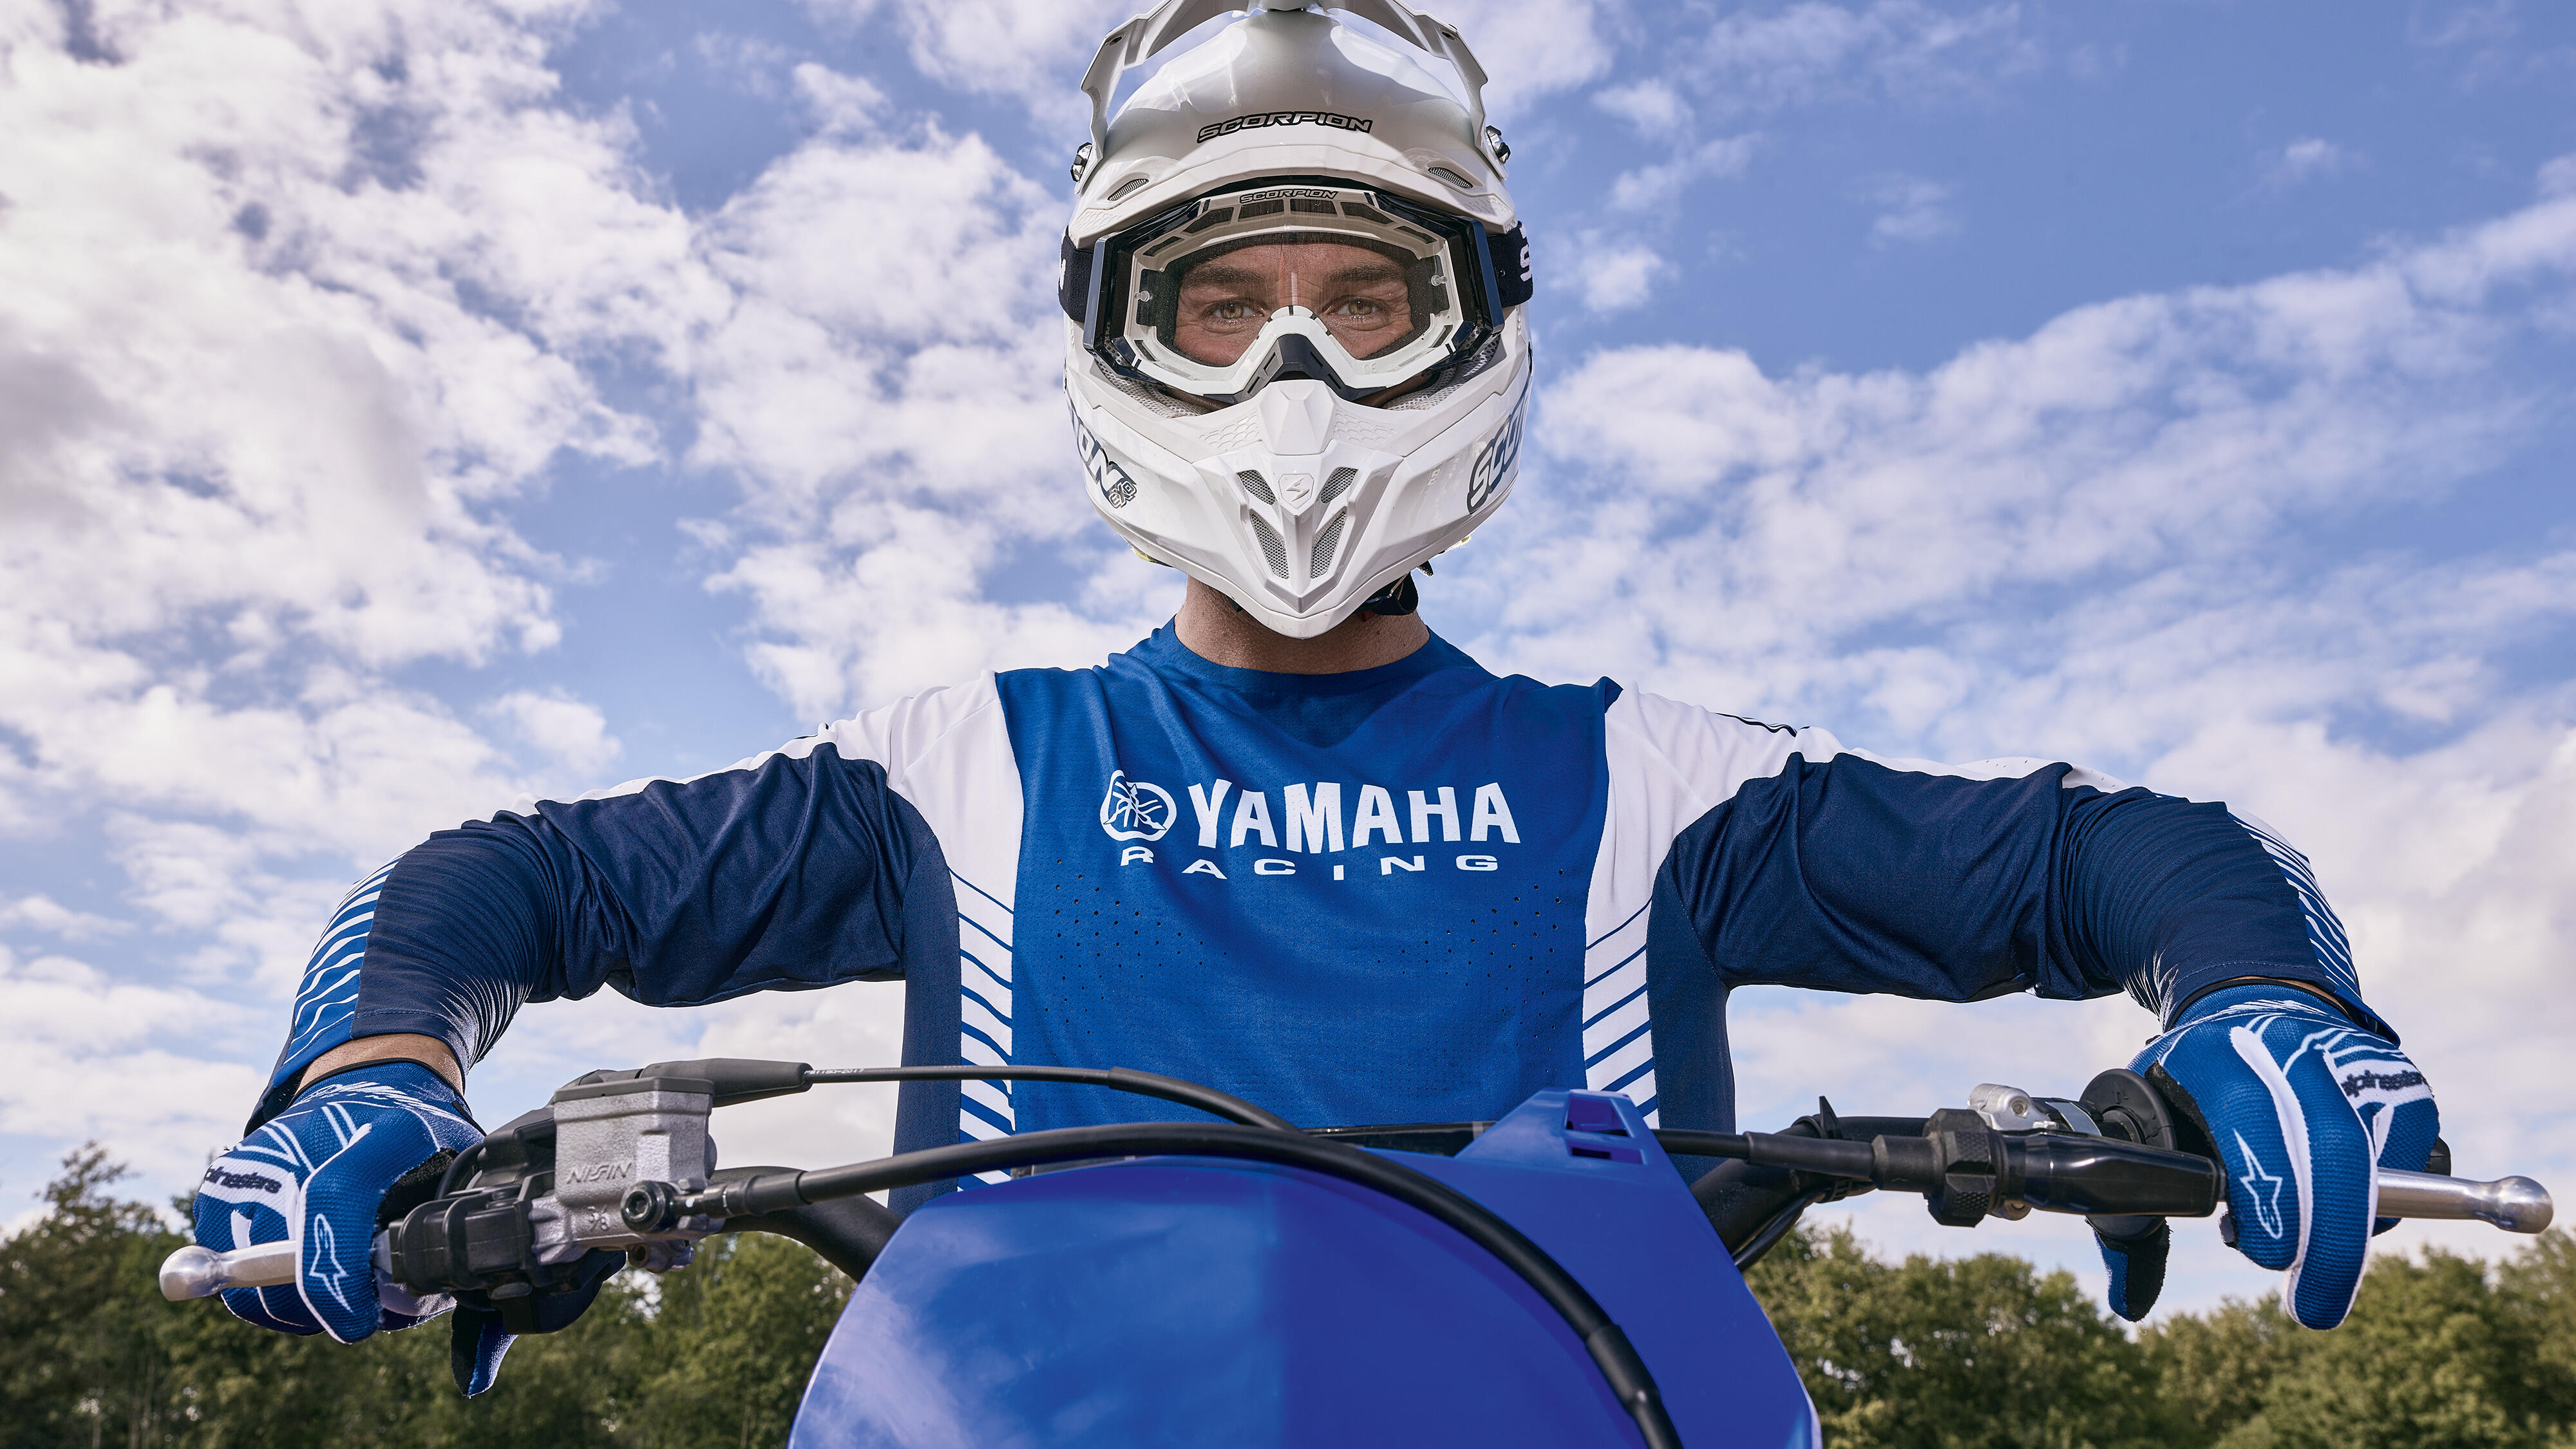 Motorrad Bekleidung - Yamaha Motor